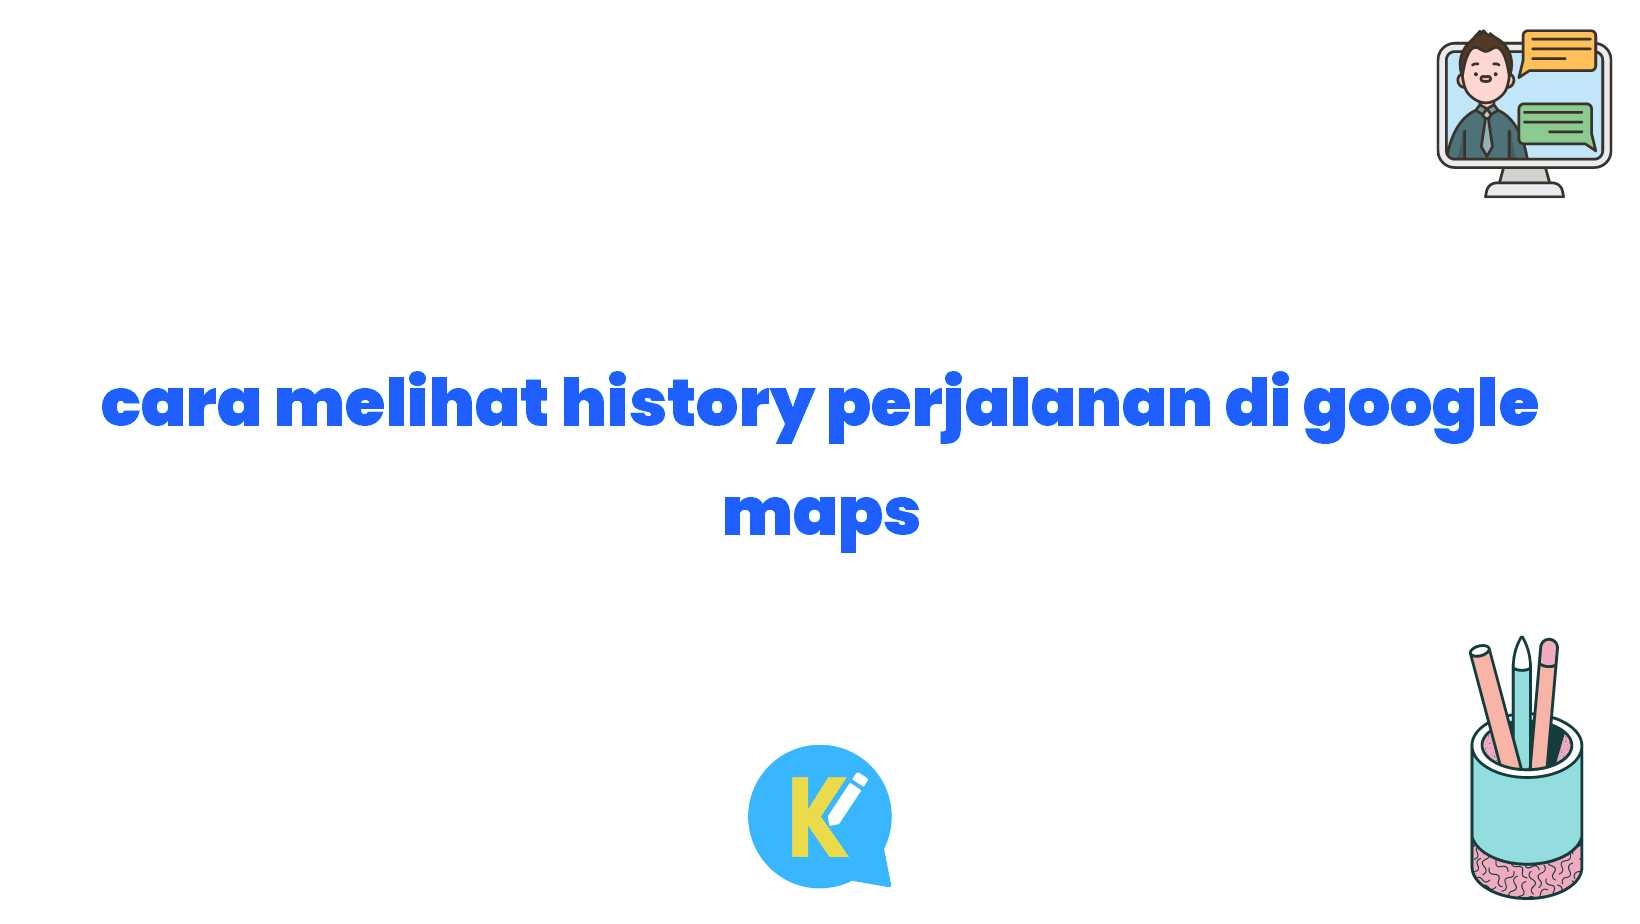 cara melihat history perjalanan di google maps